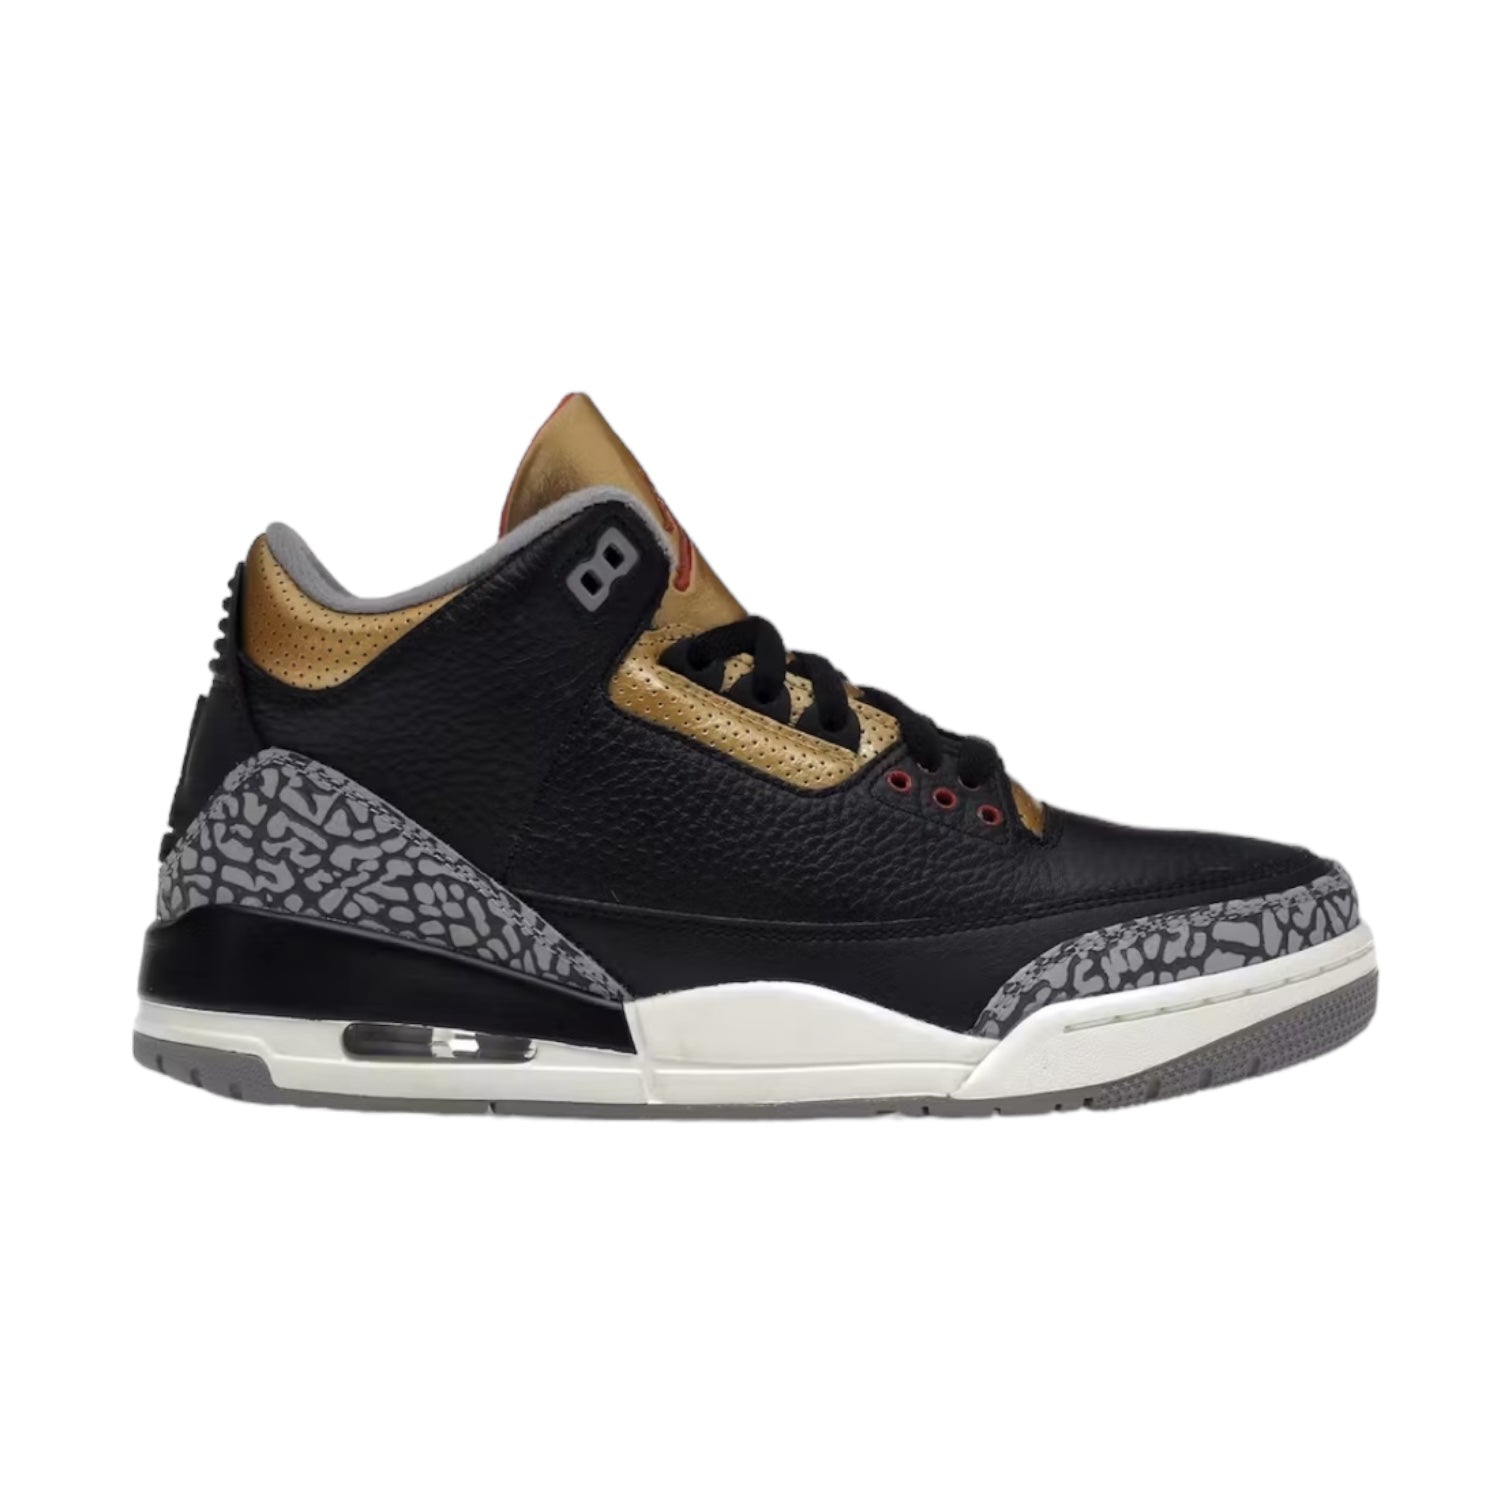 Jordan 3 Retro Black Cement Gold (Used)